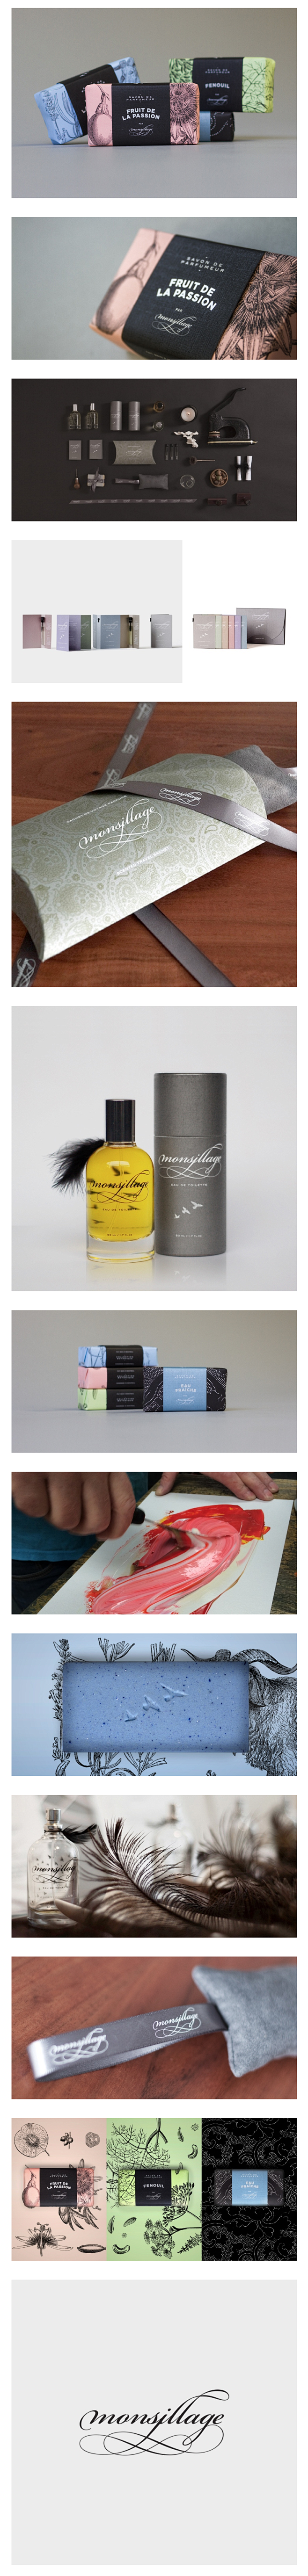 香水品牌包装设计 香水包装 包装设计